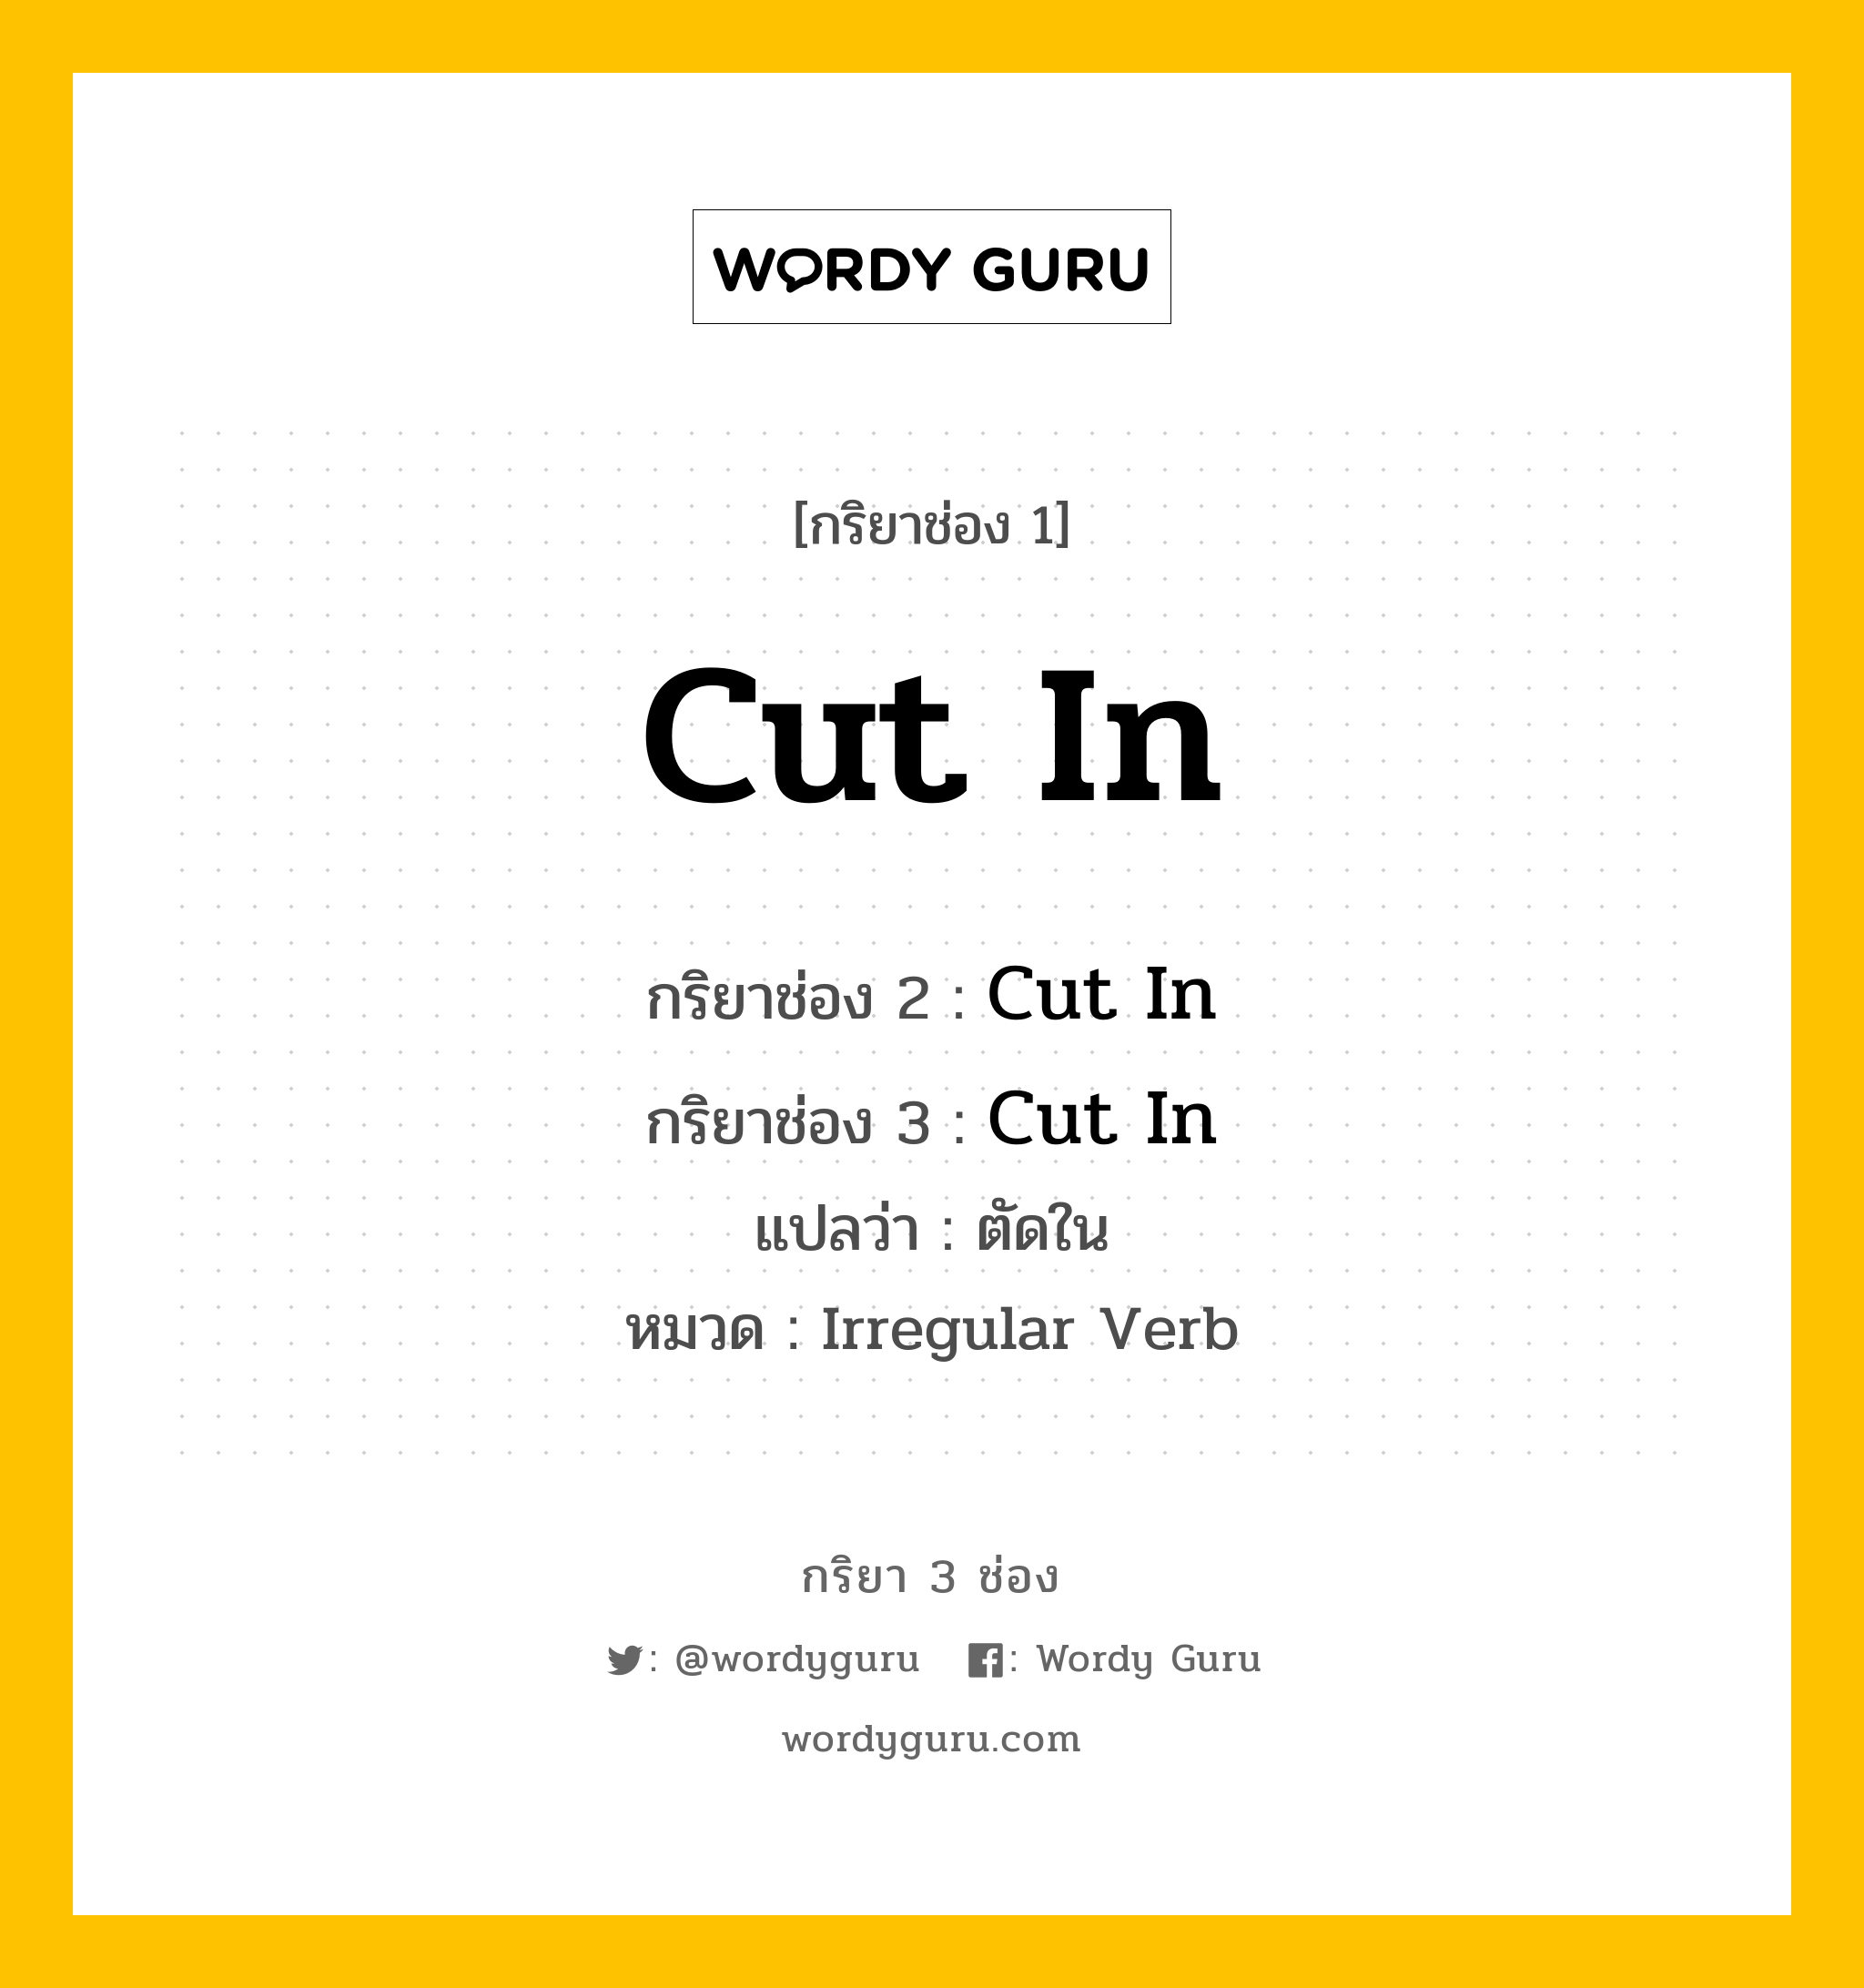 กริยา 3 ช่อง: Cut In ช่อง 2 Cut In ช่อง 3 คืออะไร, กริยาช่อง 1 Cut In กริยาช่อง 2 Cut In กริยาช่อง 3 Cut In แปลว่า ตัดใน หมวด Irregular Verb หมวด Irregular Verb